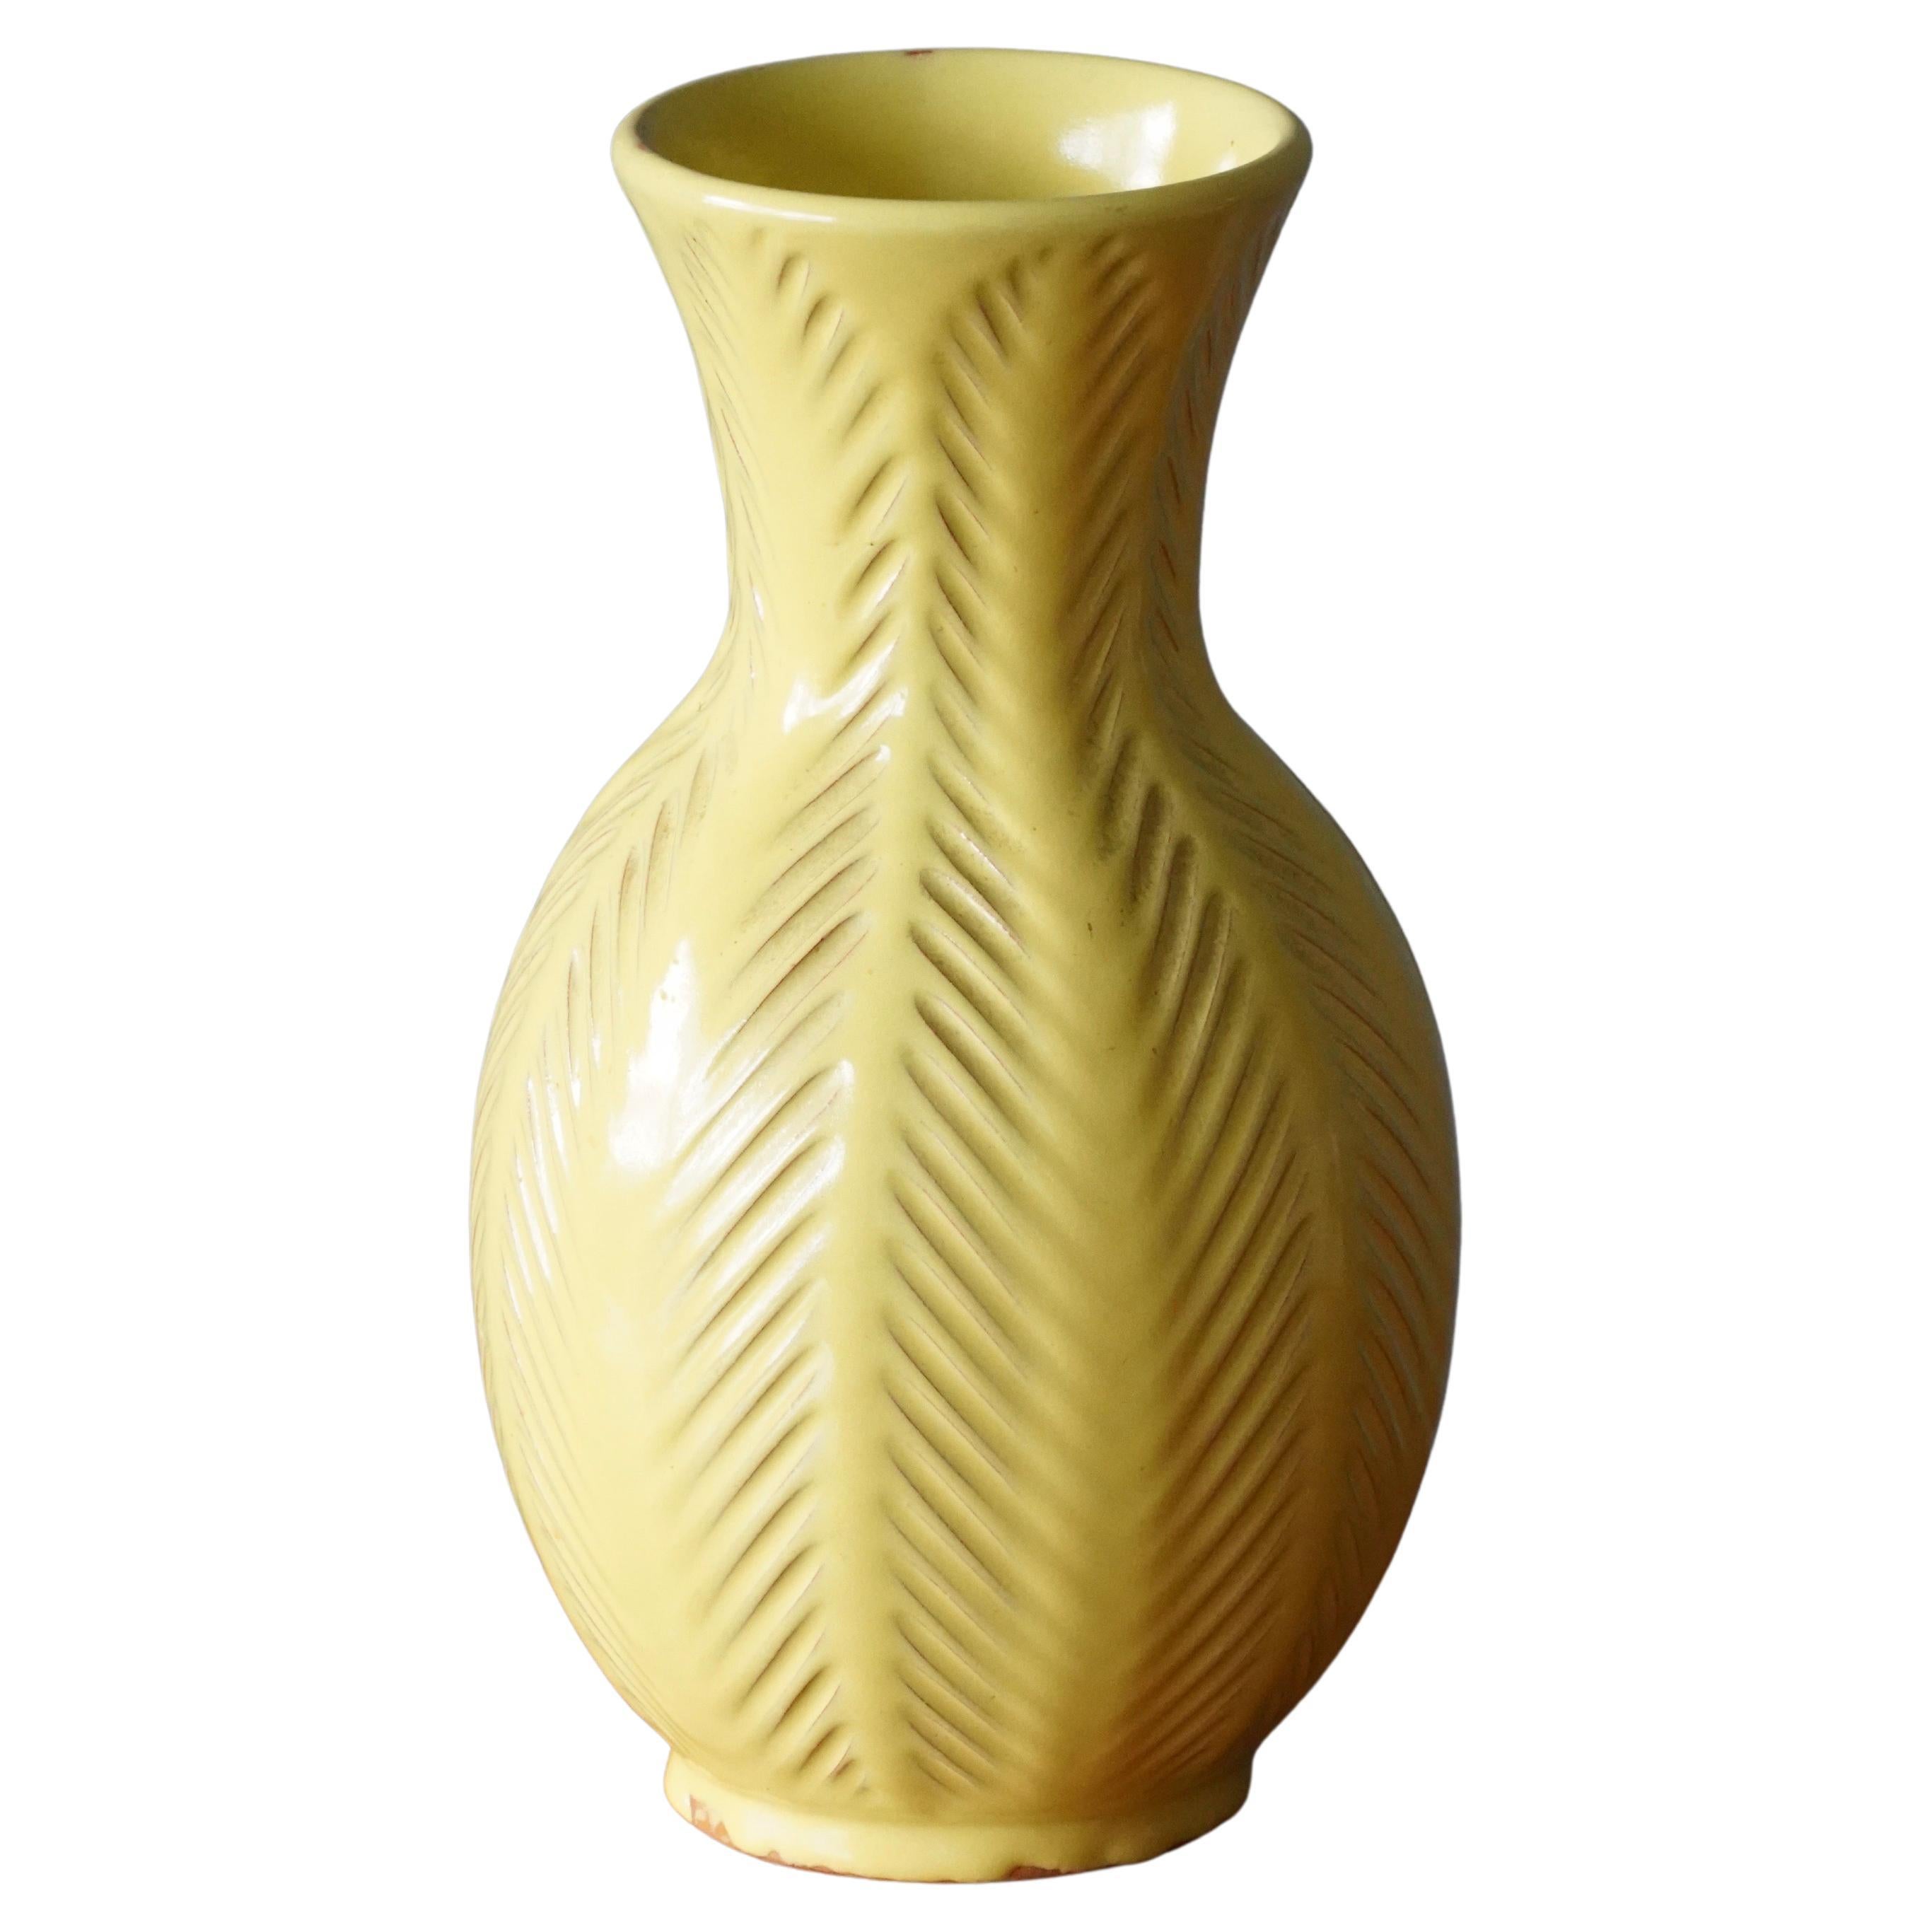 Anna-Lisa Thomson, Vase, Yellow Glazed Incised Ceramic Upsala-Ekeby Sweden 1940s